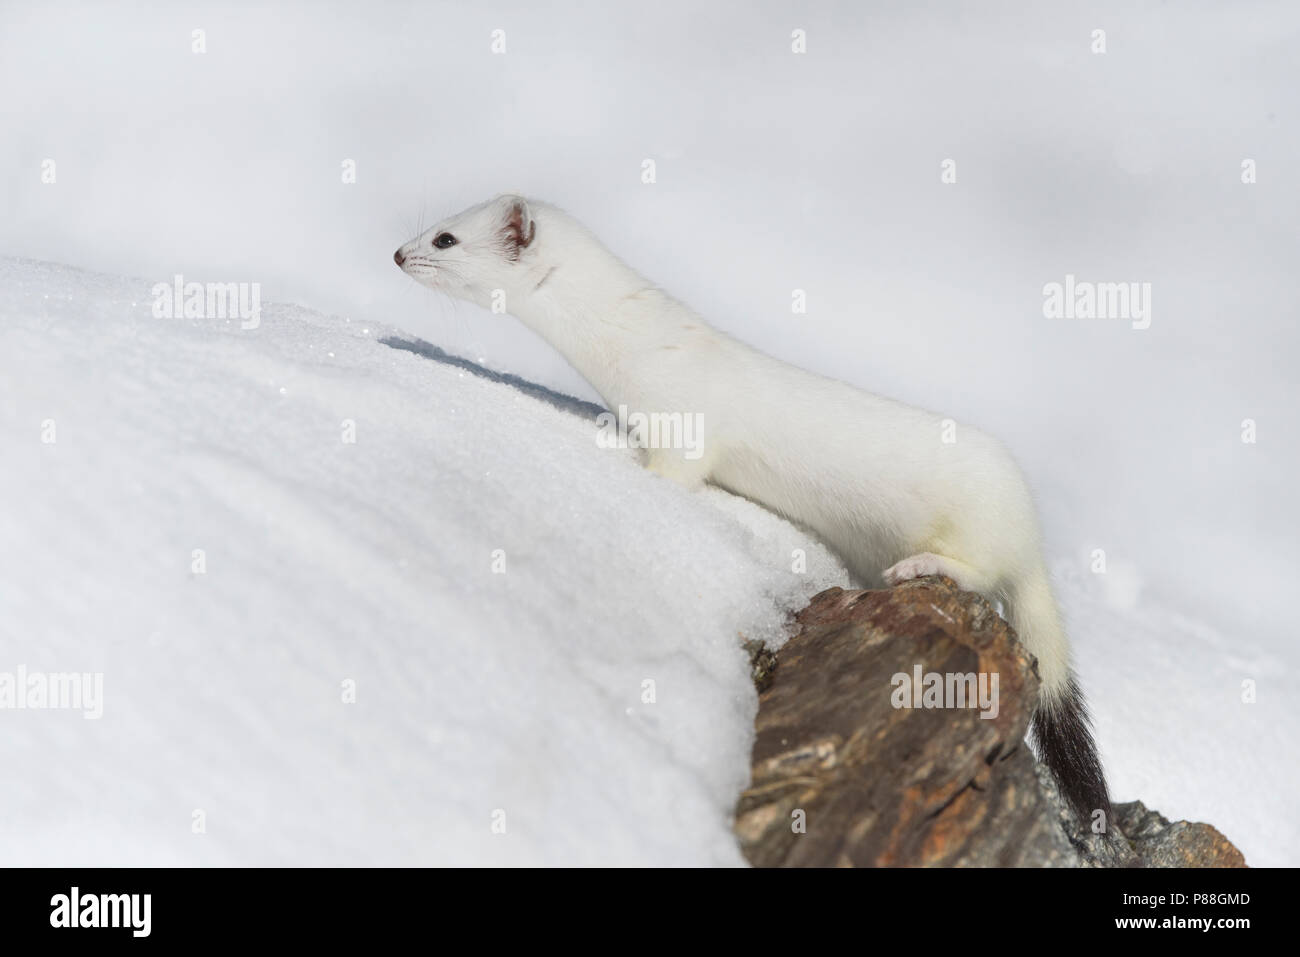 Stoat in the snow, Hermelijn tin de sneeuw Stock Photo